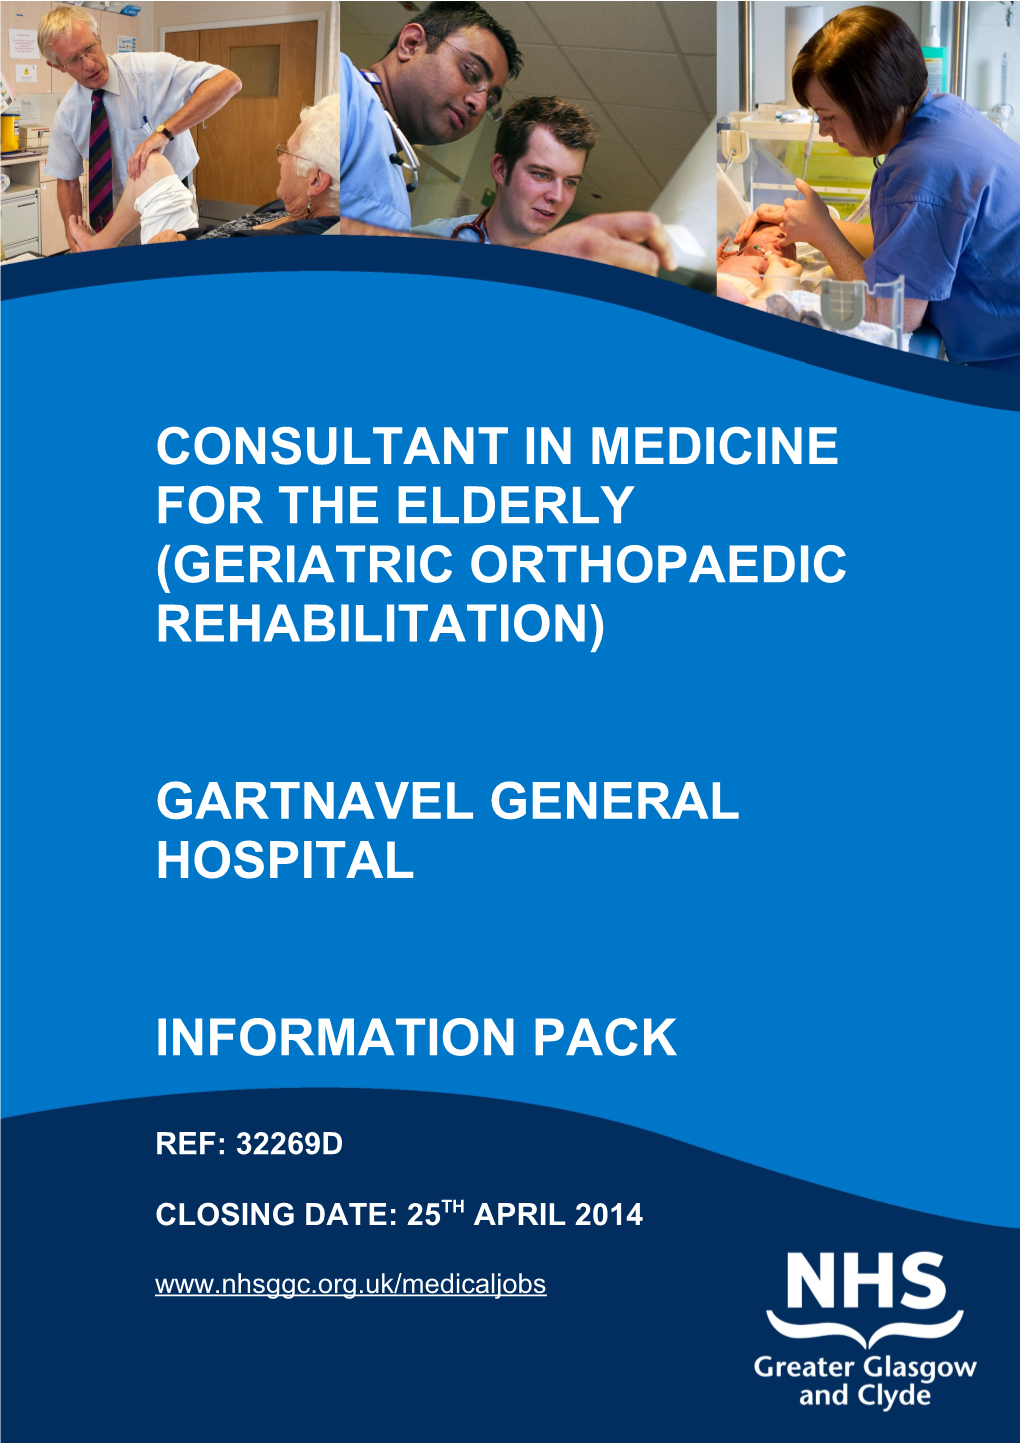 Consultant in Medicine for the Elderly (Geriatric Orthopaedic Rehabilitation)